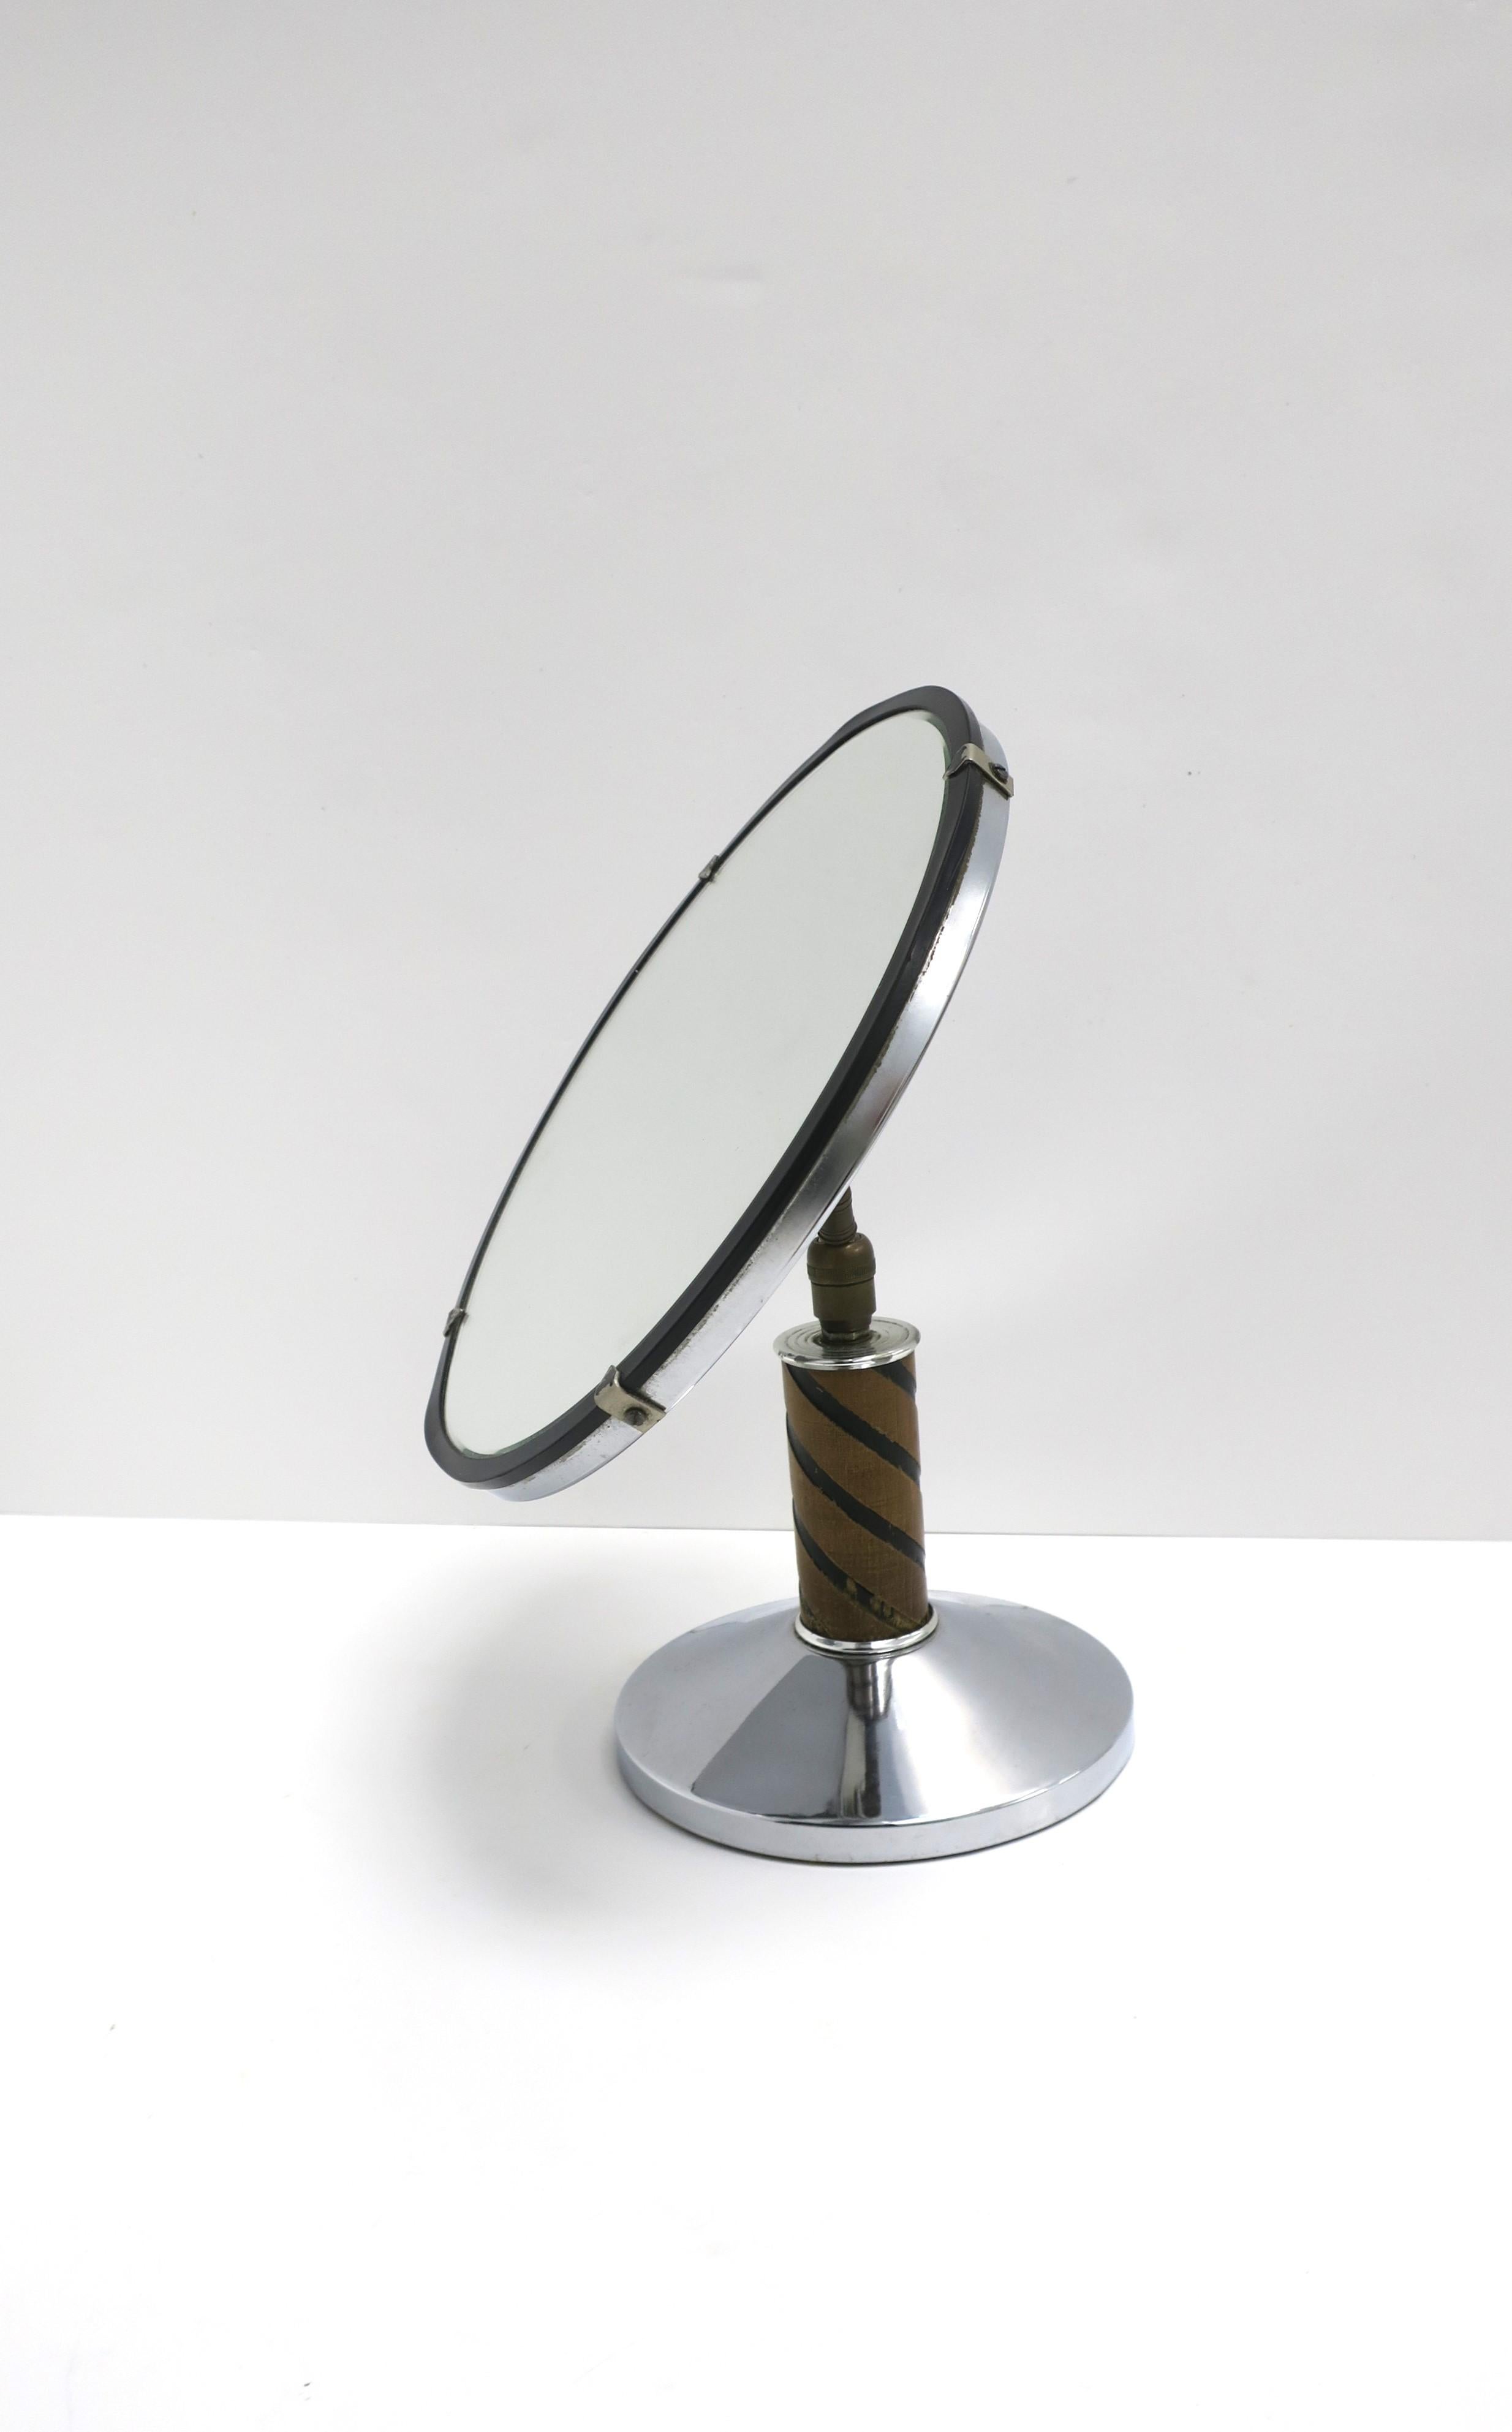 Ein verchromter und hölzerner Art-Déco-Tischspiegel, etwa Anfang des 20. Jahrhunderts. Sockel und Rahmen aus Holz und verchromtem Metall, runder Spiegel und Bronzebeschläge an der Rückseite. Der Spiegel ist wie abgebildet verstellbar (oben, unten,